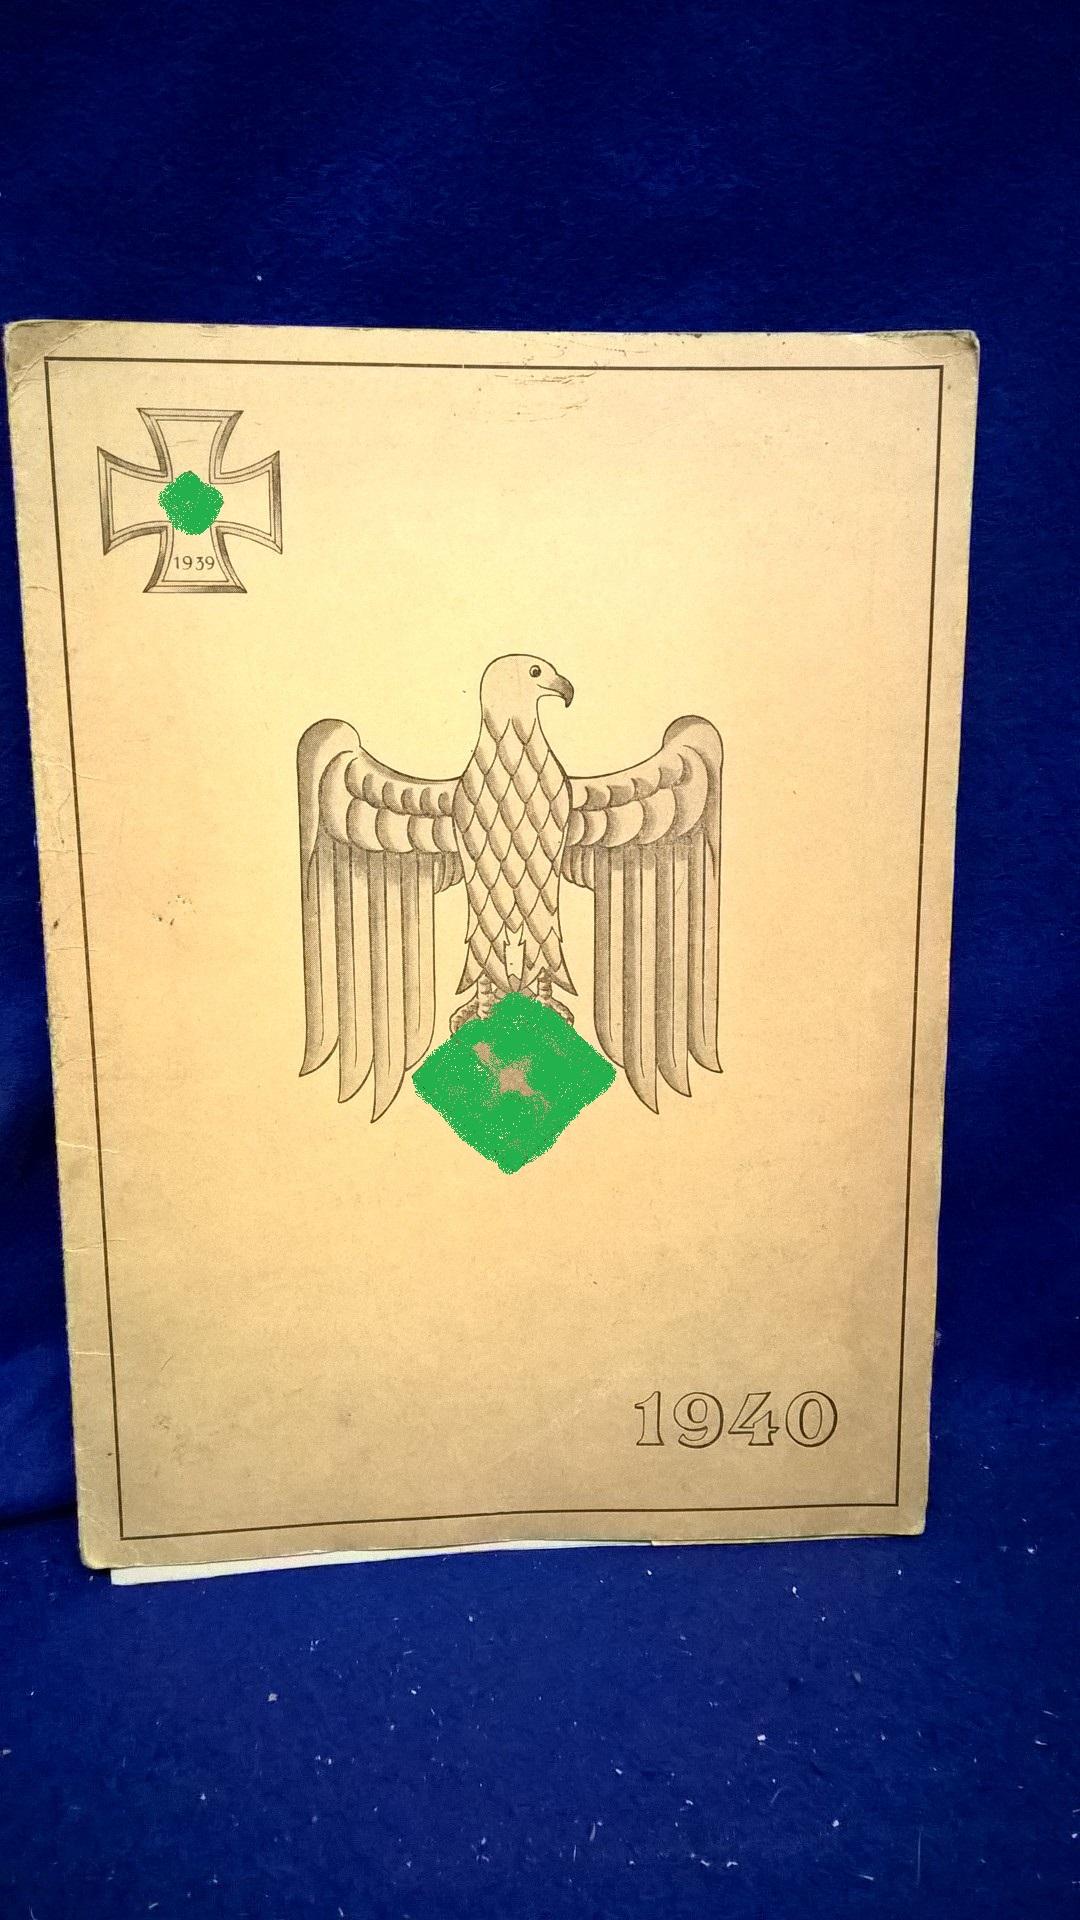 Schmuckvolle Kartenmappe über den Vormarsch der 12.Infanterie-Division im Westfeldzug 1940 mit insgesamt 7 Karten. Anläßlich zum Heldengedenktage 1941 zur Erinnerung an den Westfeldzug gefertigt und signiert (nur gedruckt!) vom damaligen Kommandeur der 12